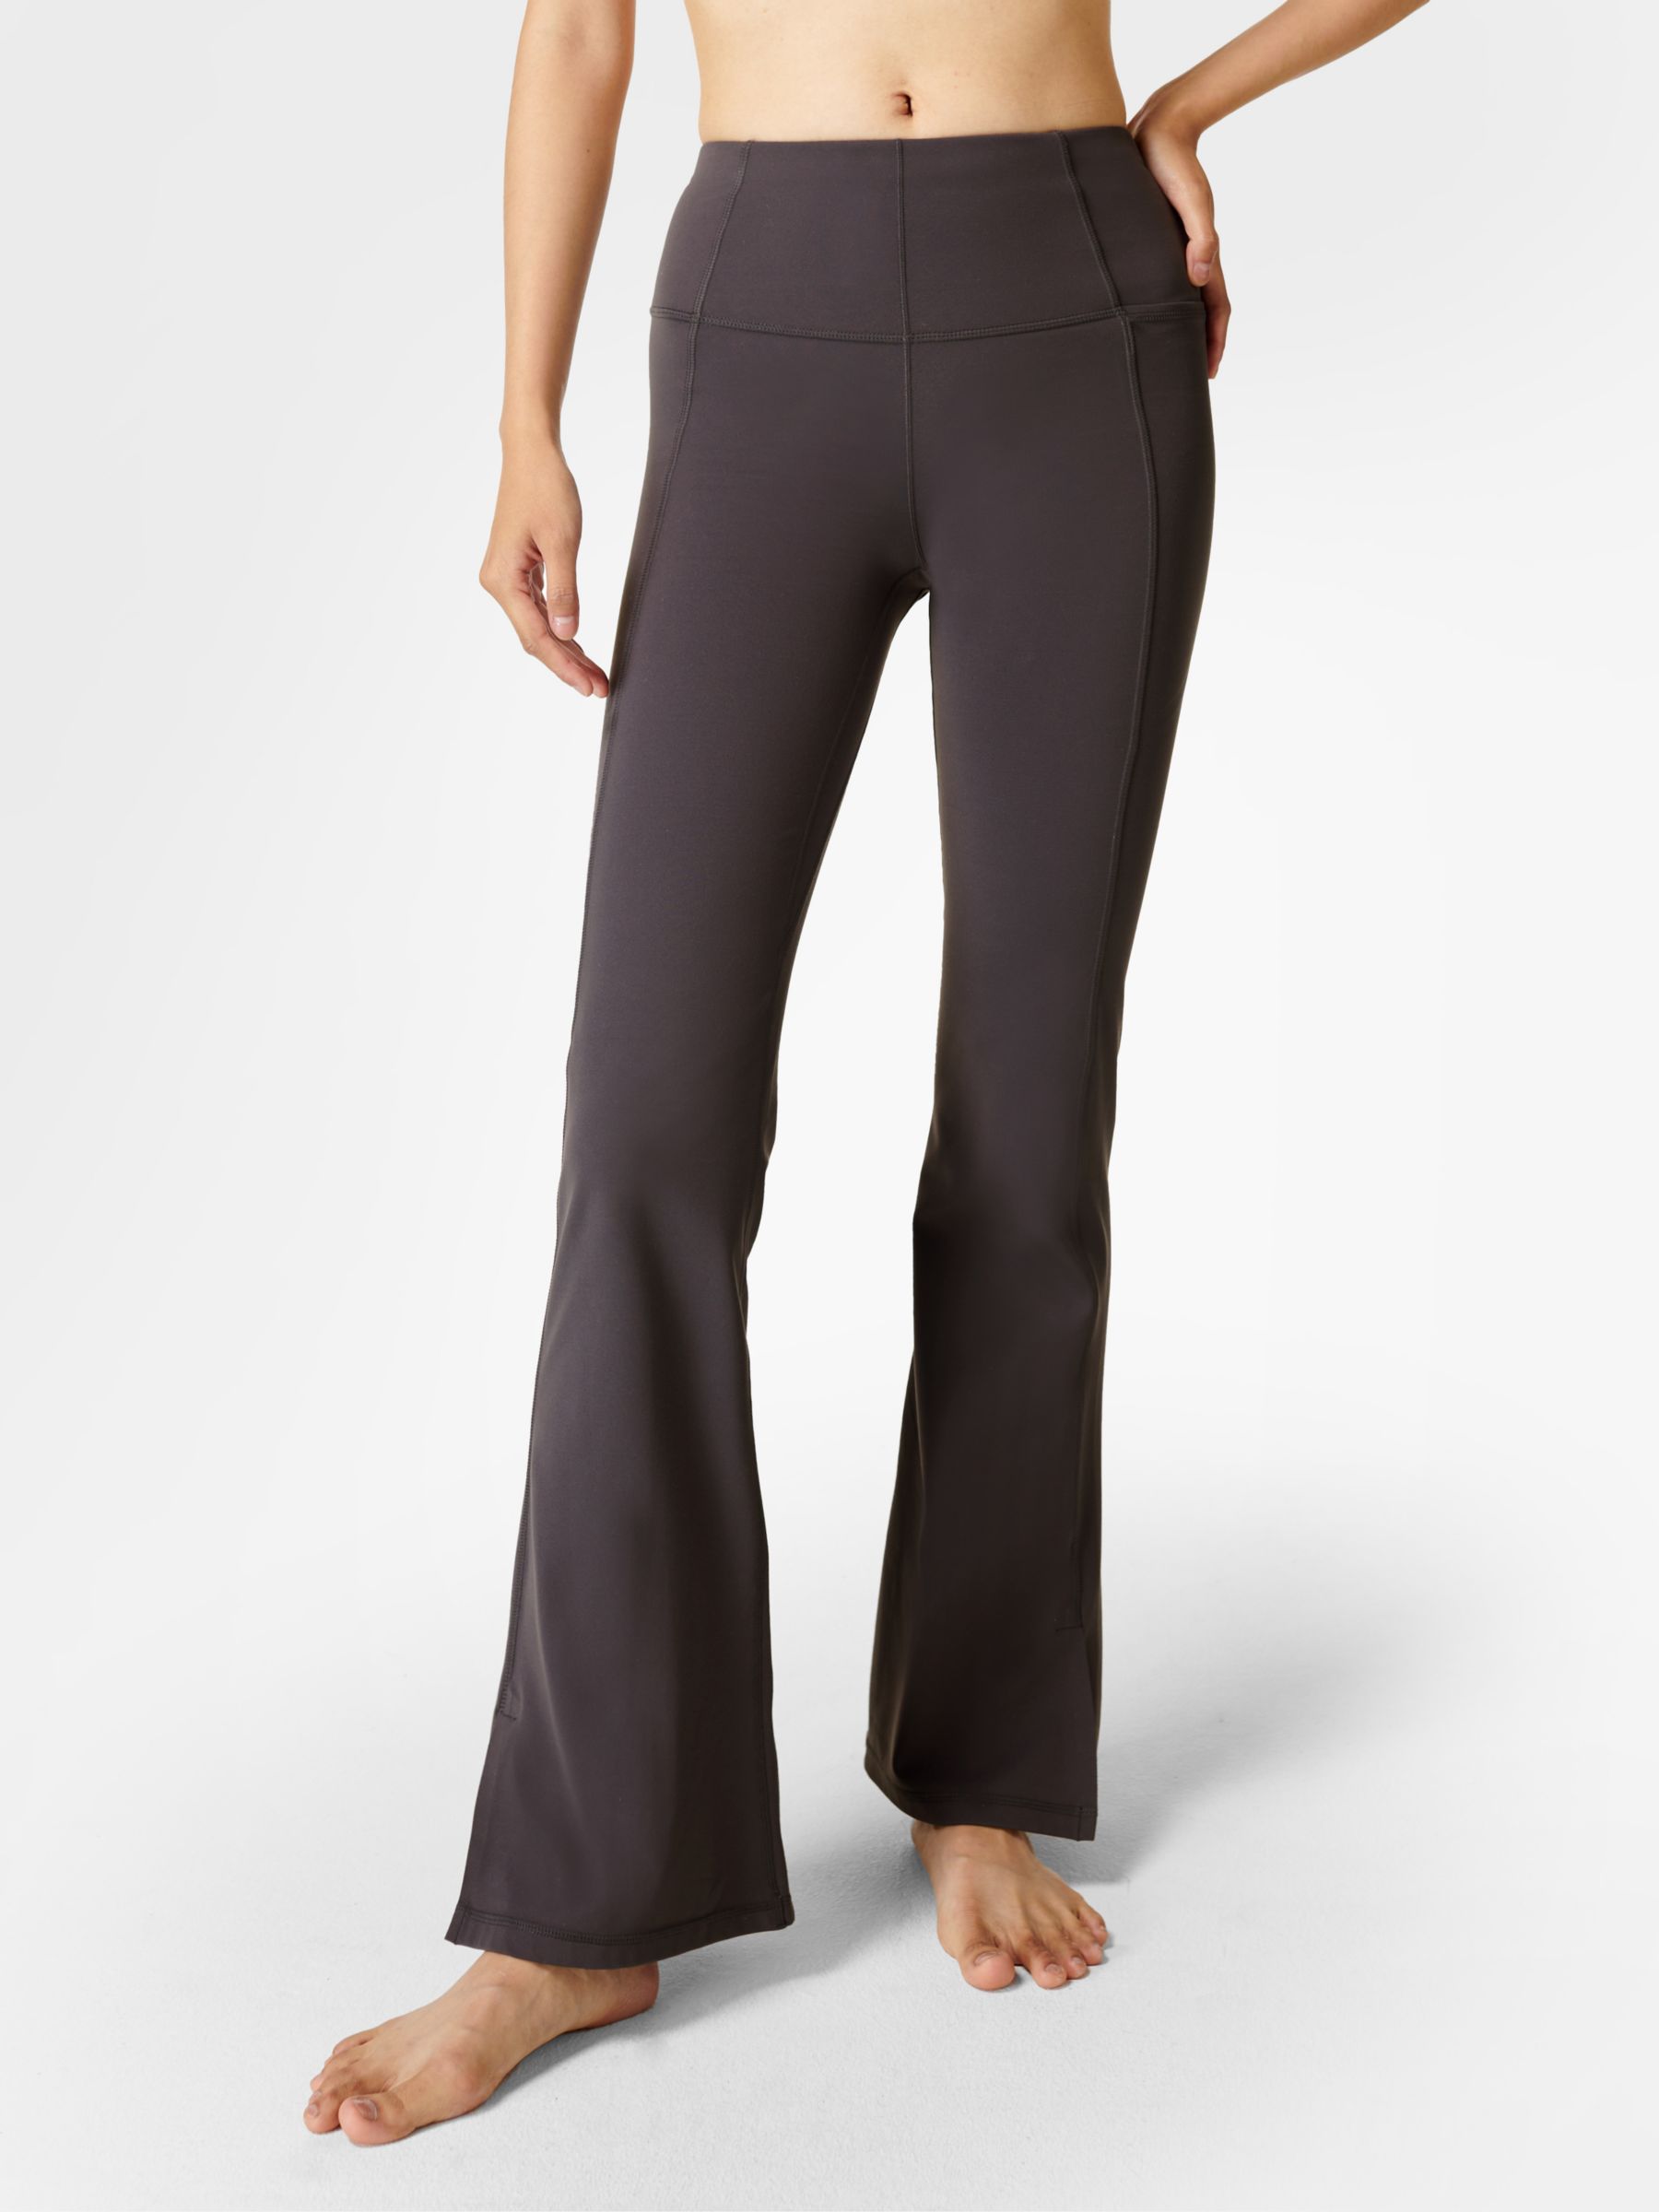 A.L.C. Women's Stretch Cotton Flare Pants - Black - Size 10